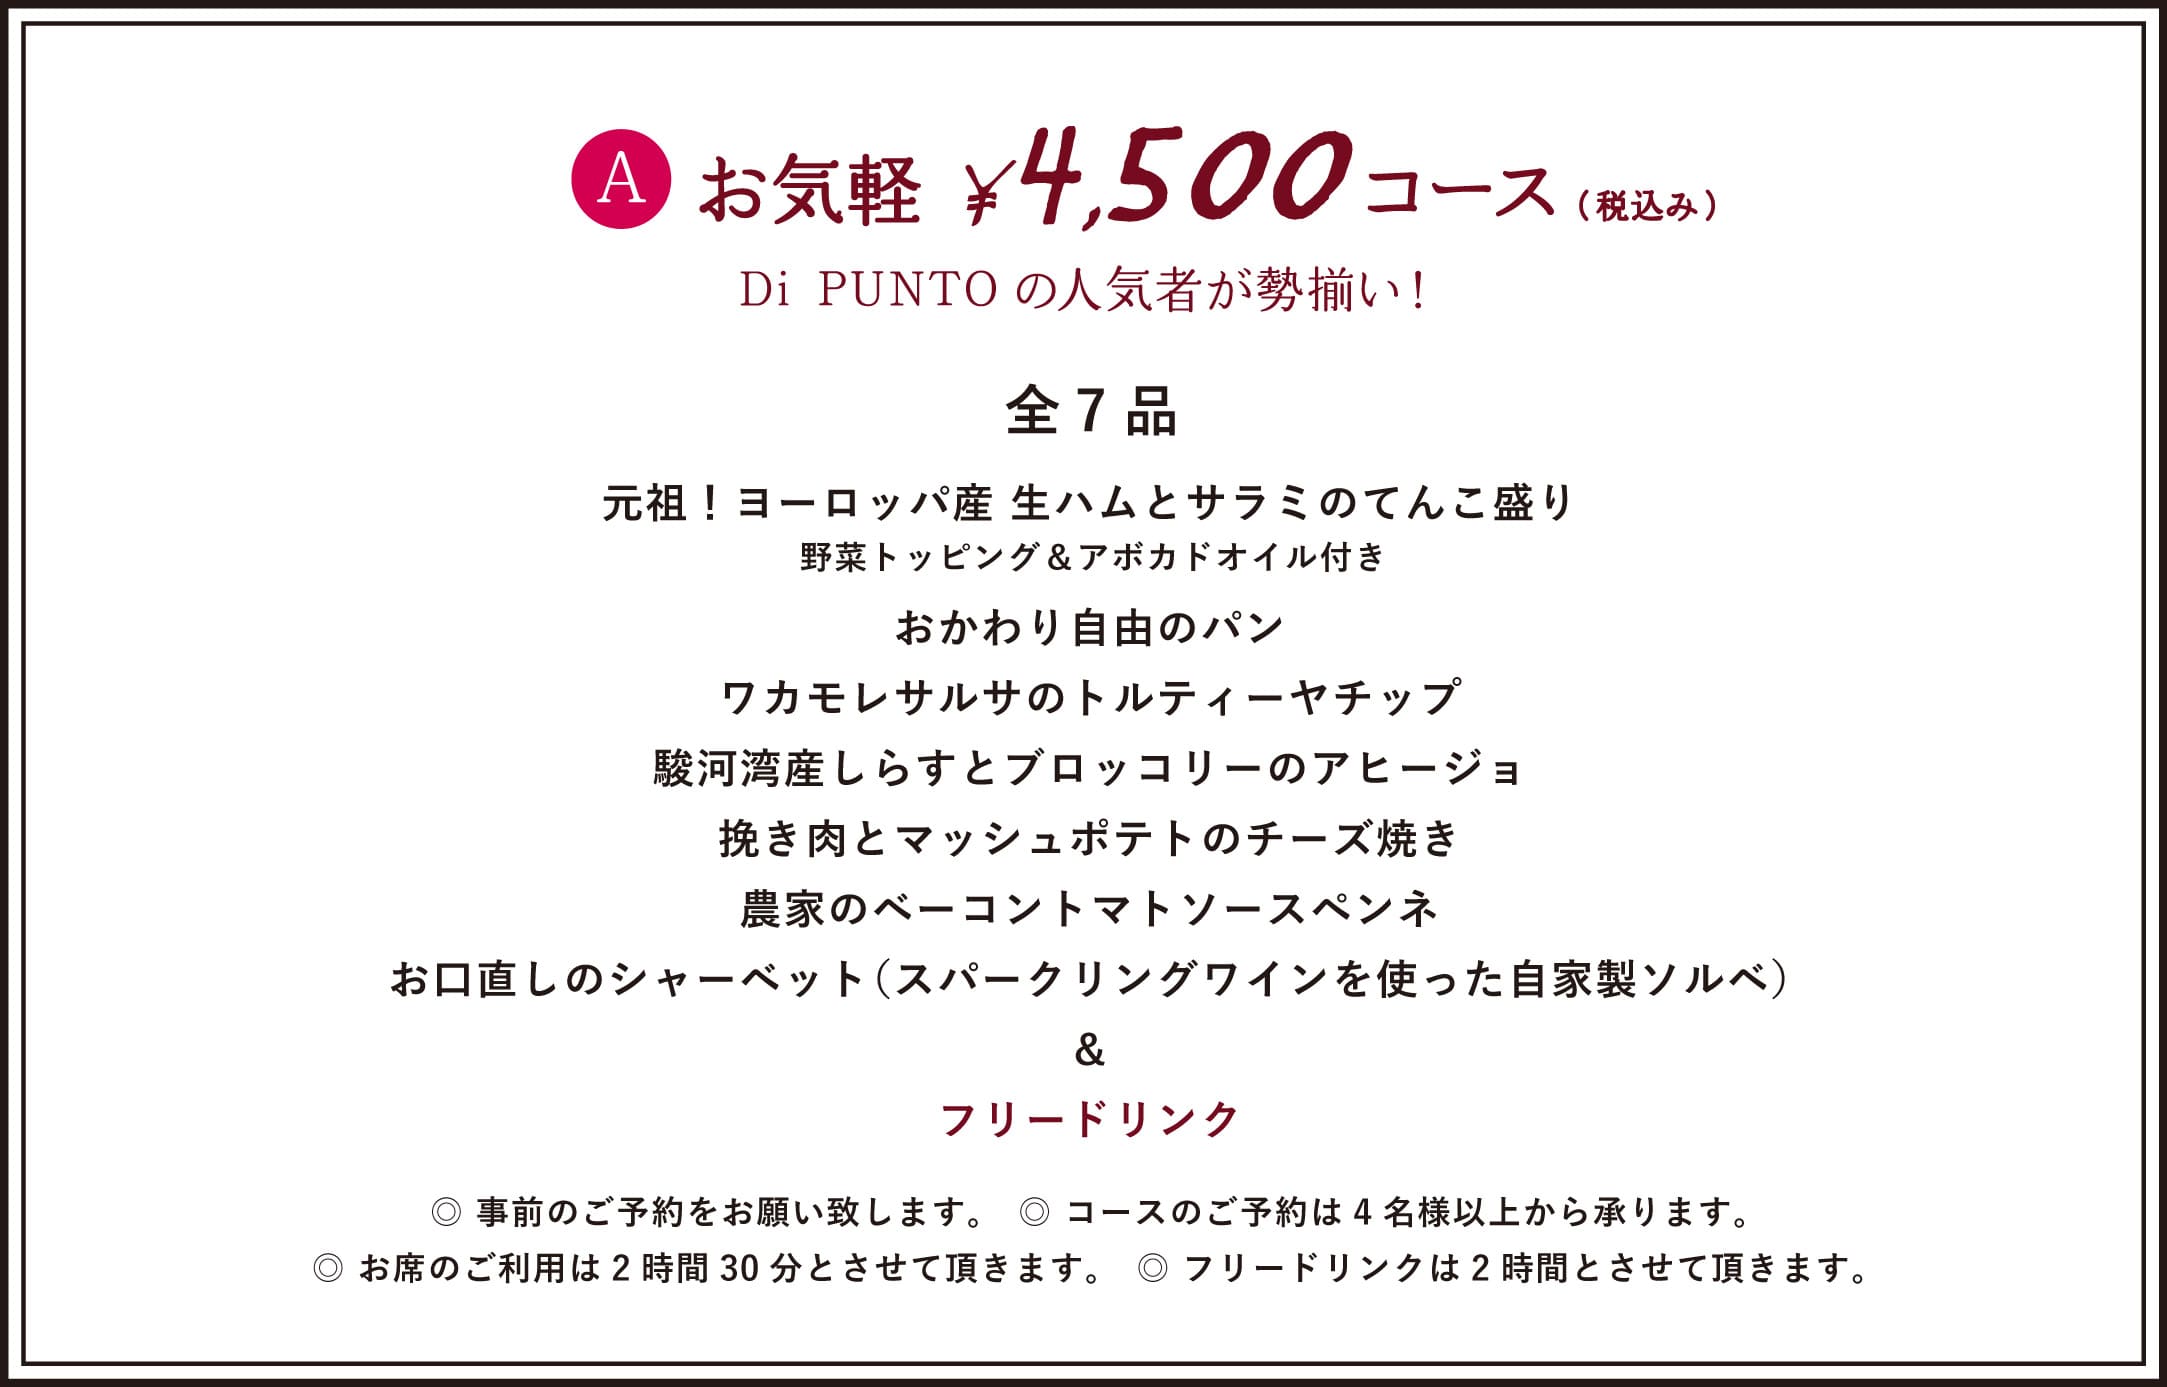 ¥4,500 COURSE